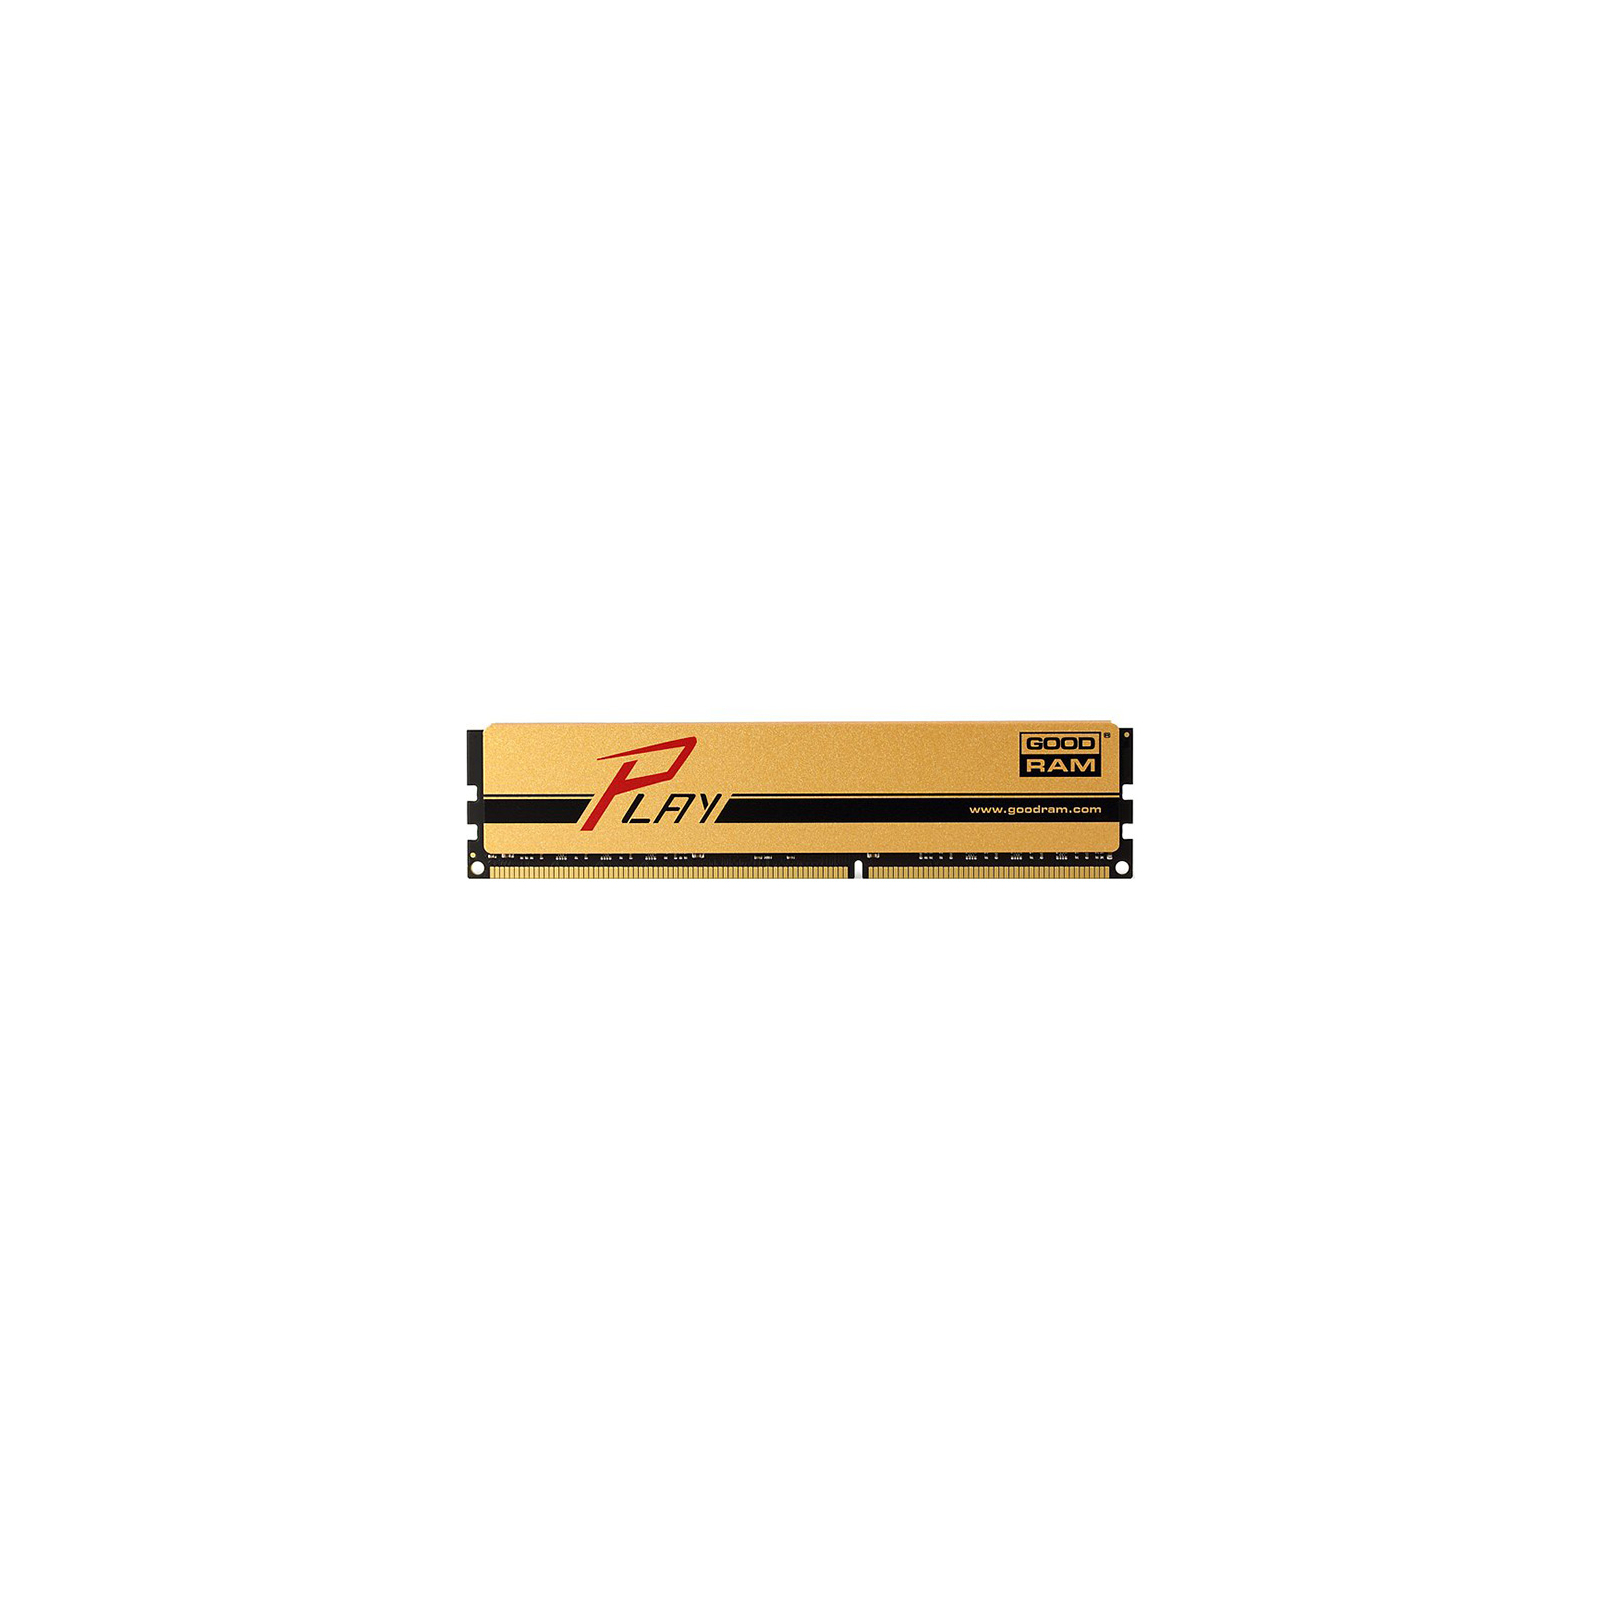 Модуль памяти для компьютера DDR3 4GB 1866 MHz PLAY Gold Goodram (GYG1866D364L9AS/4G)